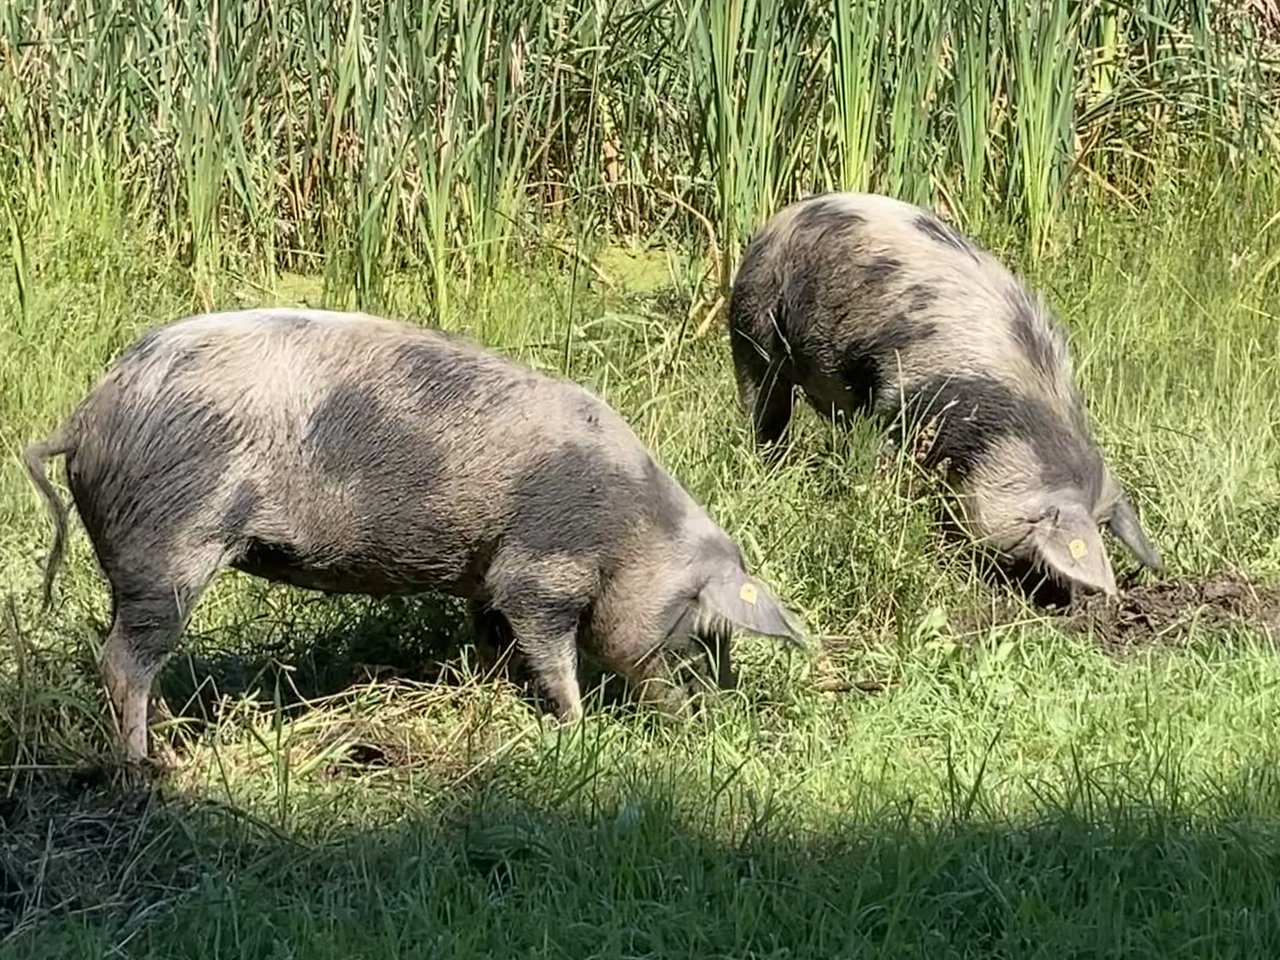 Turopolje-Schweine im Einsatz: Mit ihrem Rüssel graben sie die Erde um und fressen nebst Gras auch die Schilfwurzeln. Damit helfen sie, zu verhindern, dass die Teiche weiter verlanden. (Bilder Alexandra Stückelberger)